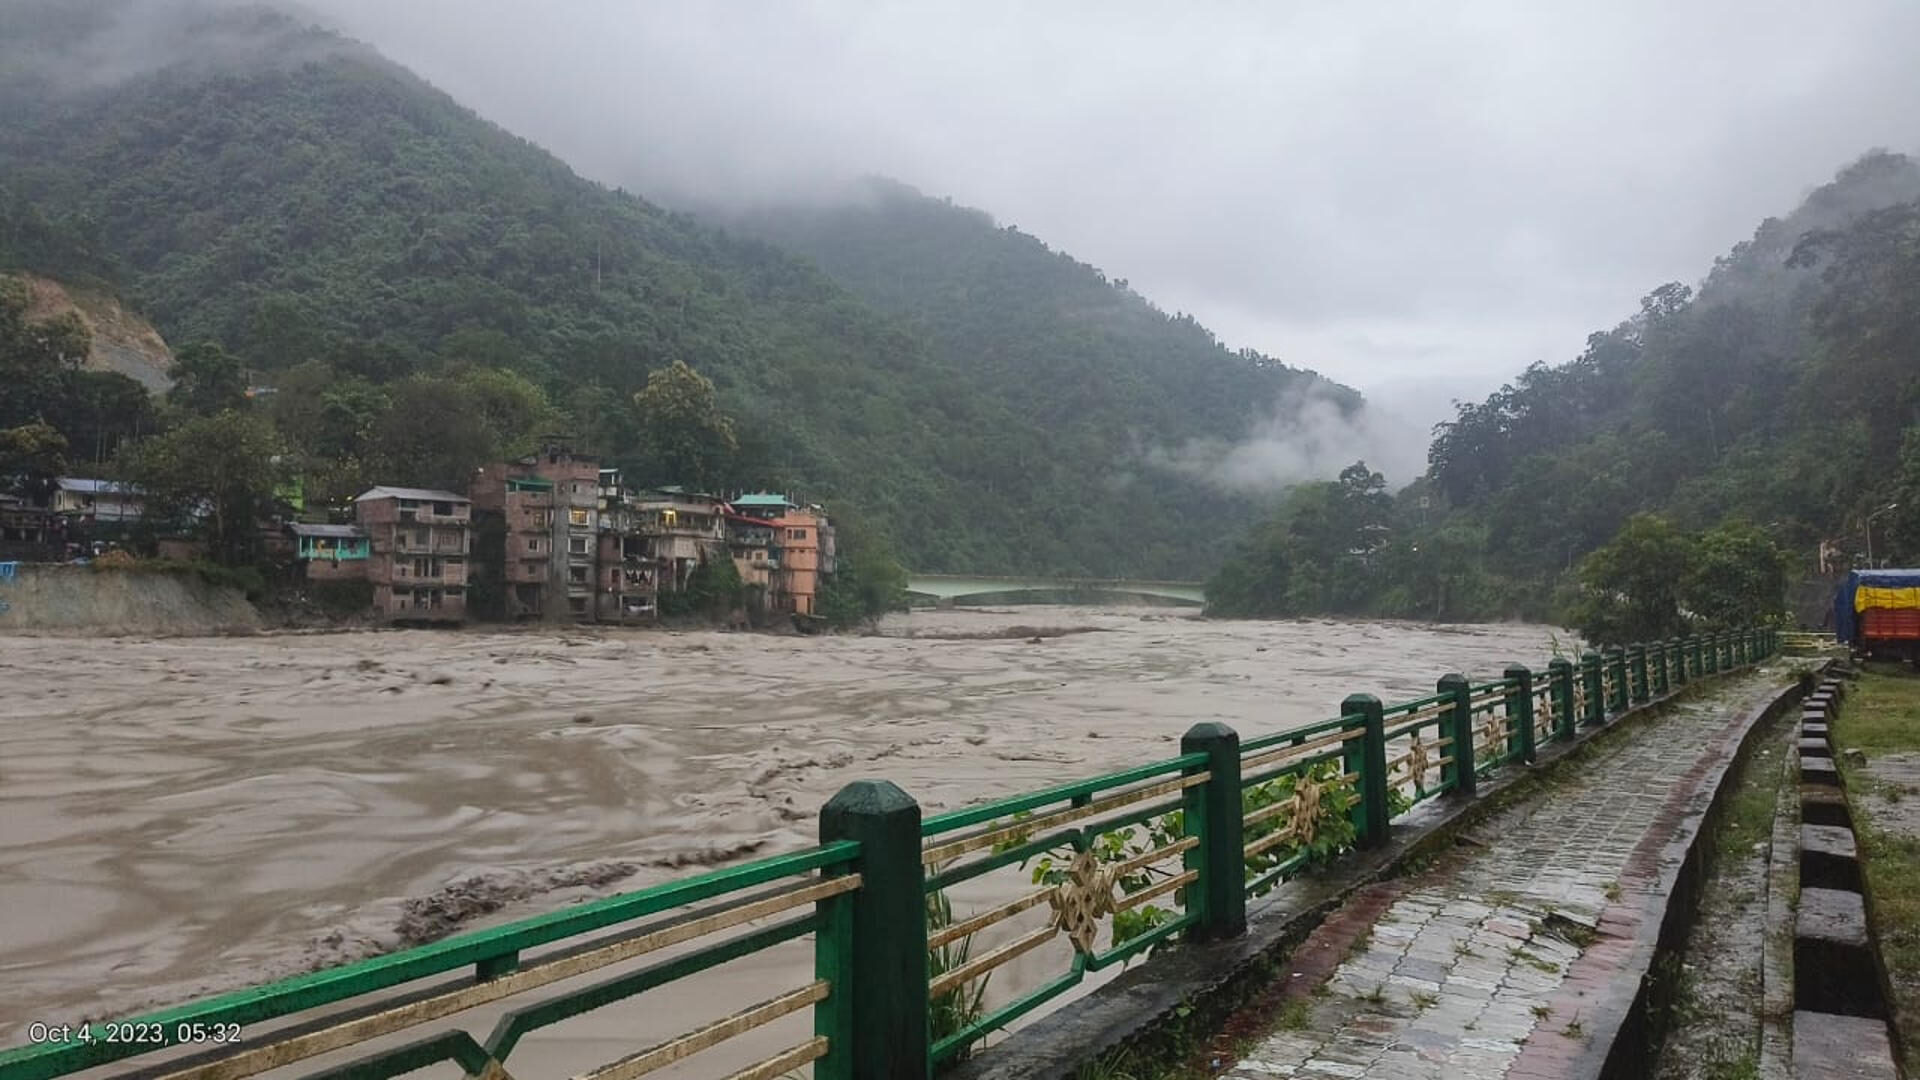 Imagen facilitada a EFE por el Ejército de la India durante las inundaciones en el estado de Sikkim en la que, entre otros, desaparecieron más de 20 soldados.